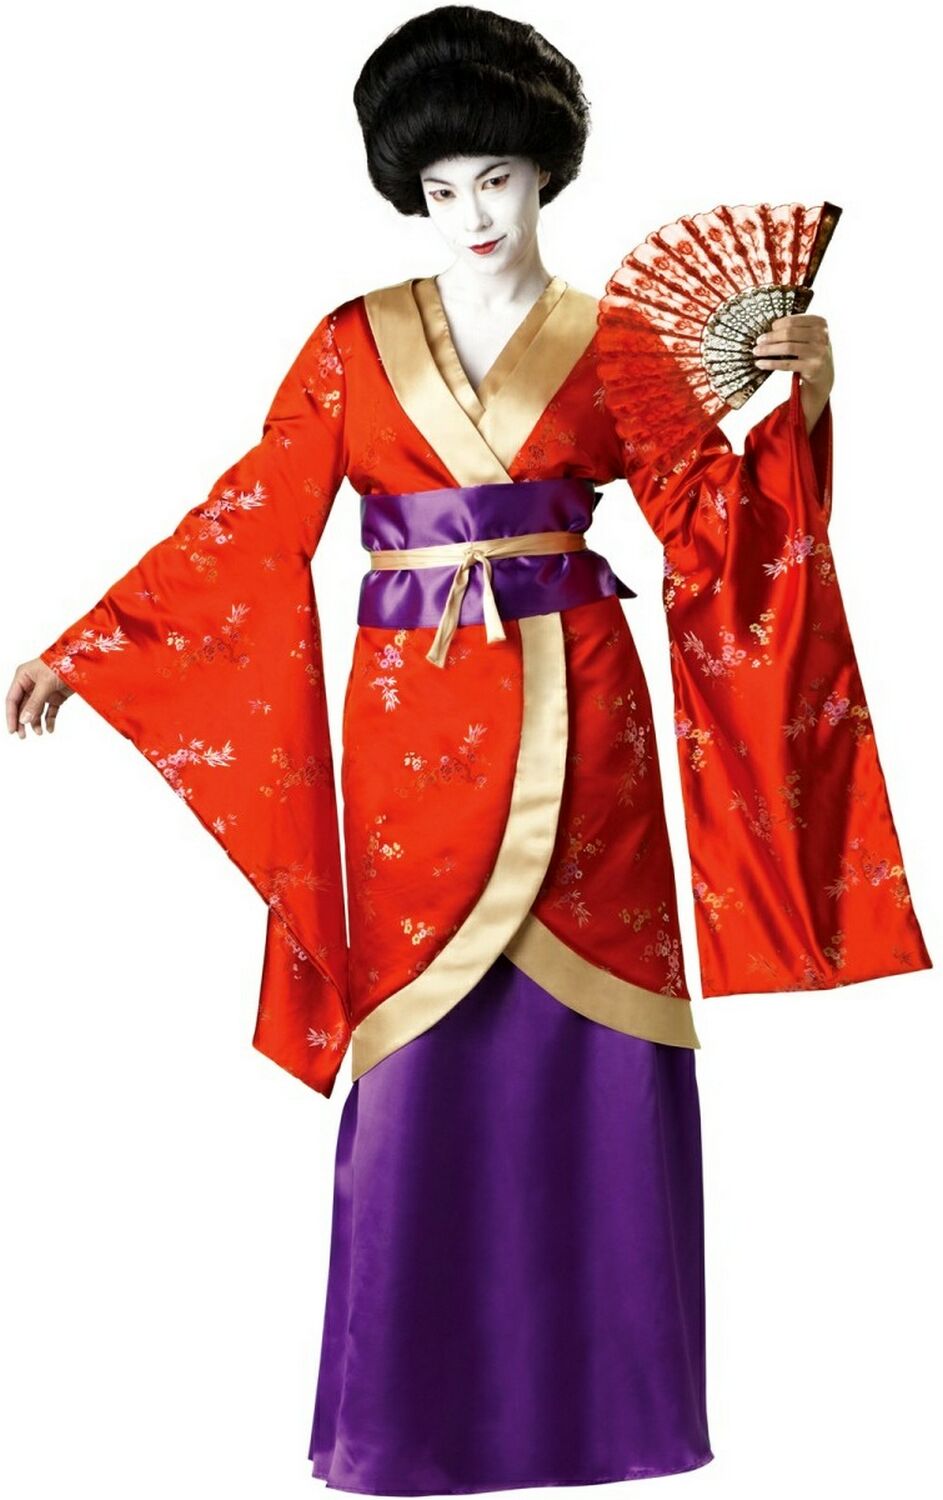 dragă gravidă Familiar geisha costume faptă rea exagerare pătrat